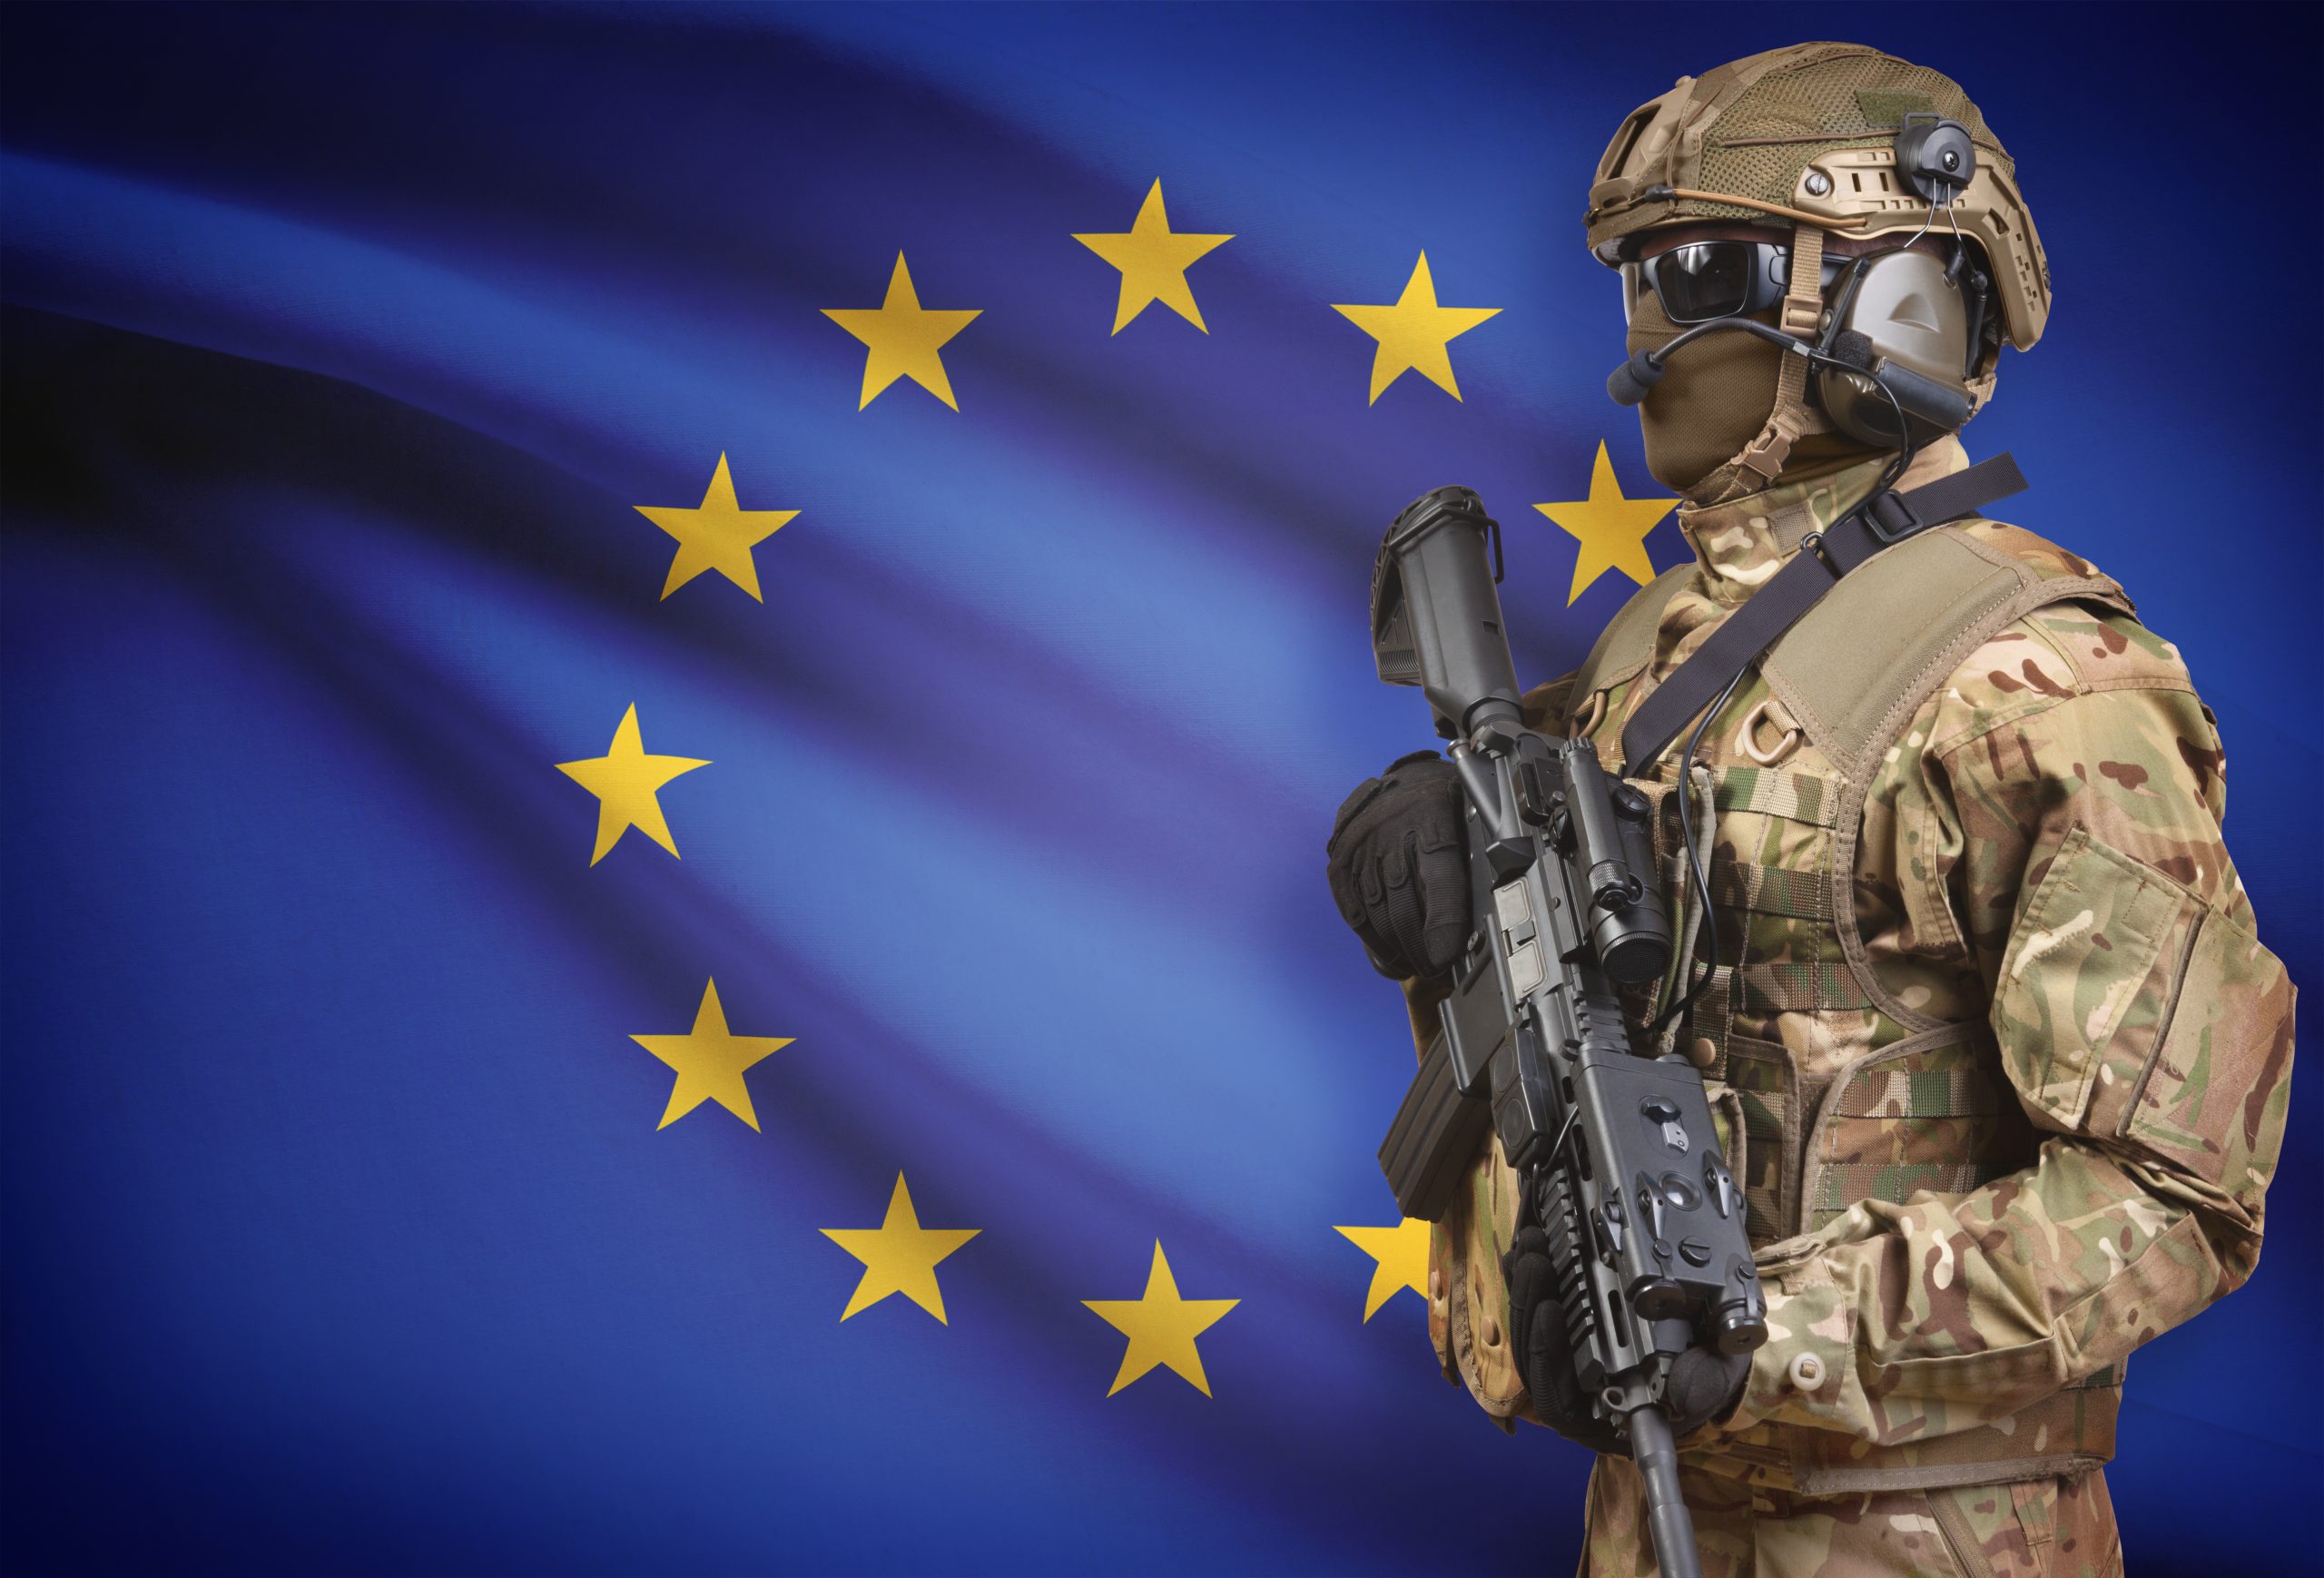 Και εγένετο η ευρωπαϊκή στρατιωτική ένωση: Η ΕΕ ανεξαρτητοποιείται από τις ΗΠΑ